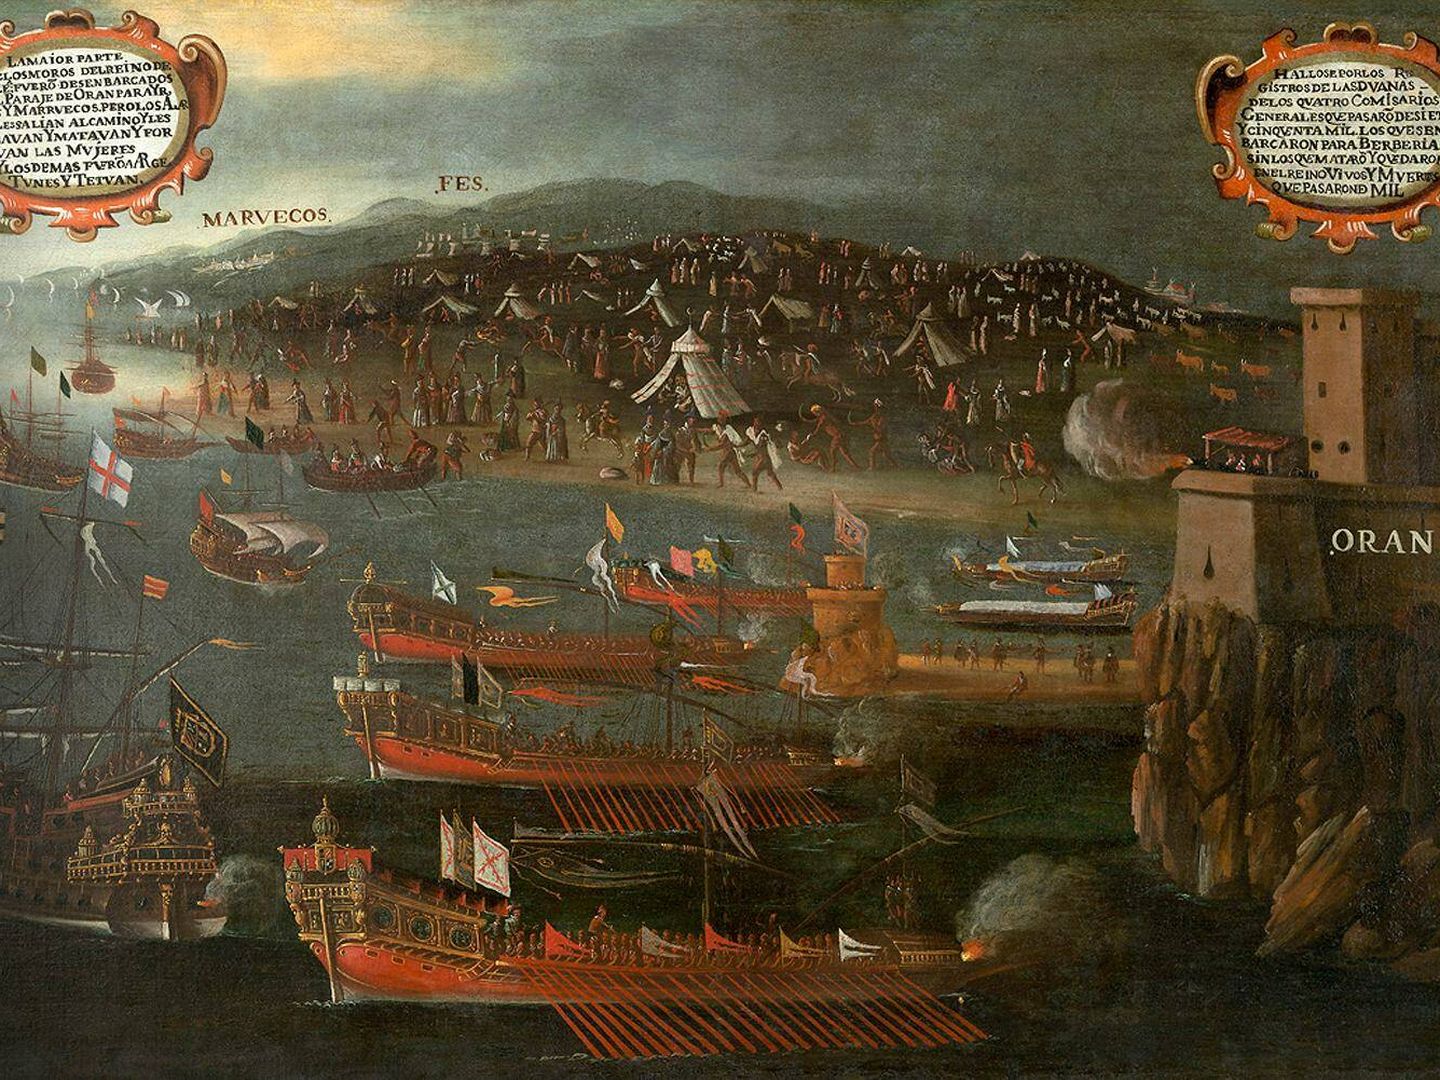 Desembarco de los moriscos en el Puerto de Orán, pintado en 1613 por Vicente Mostre